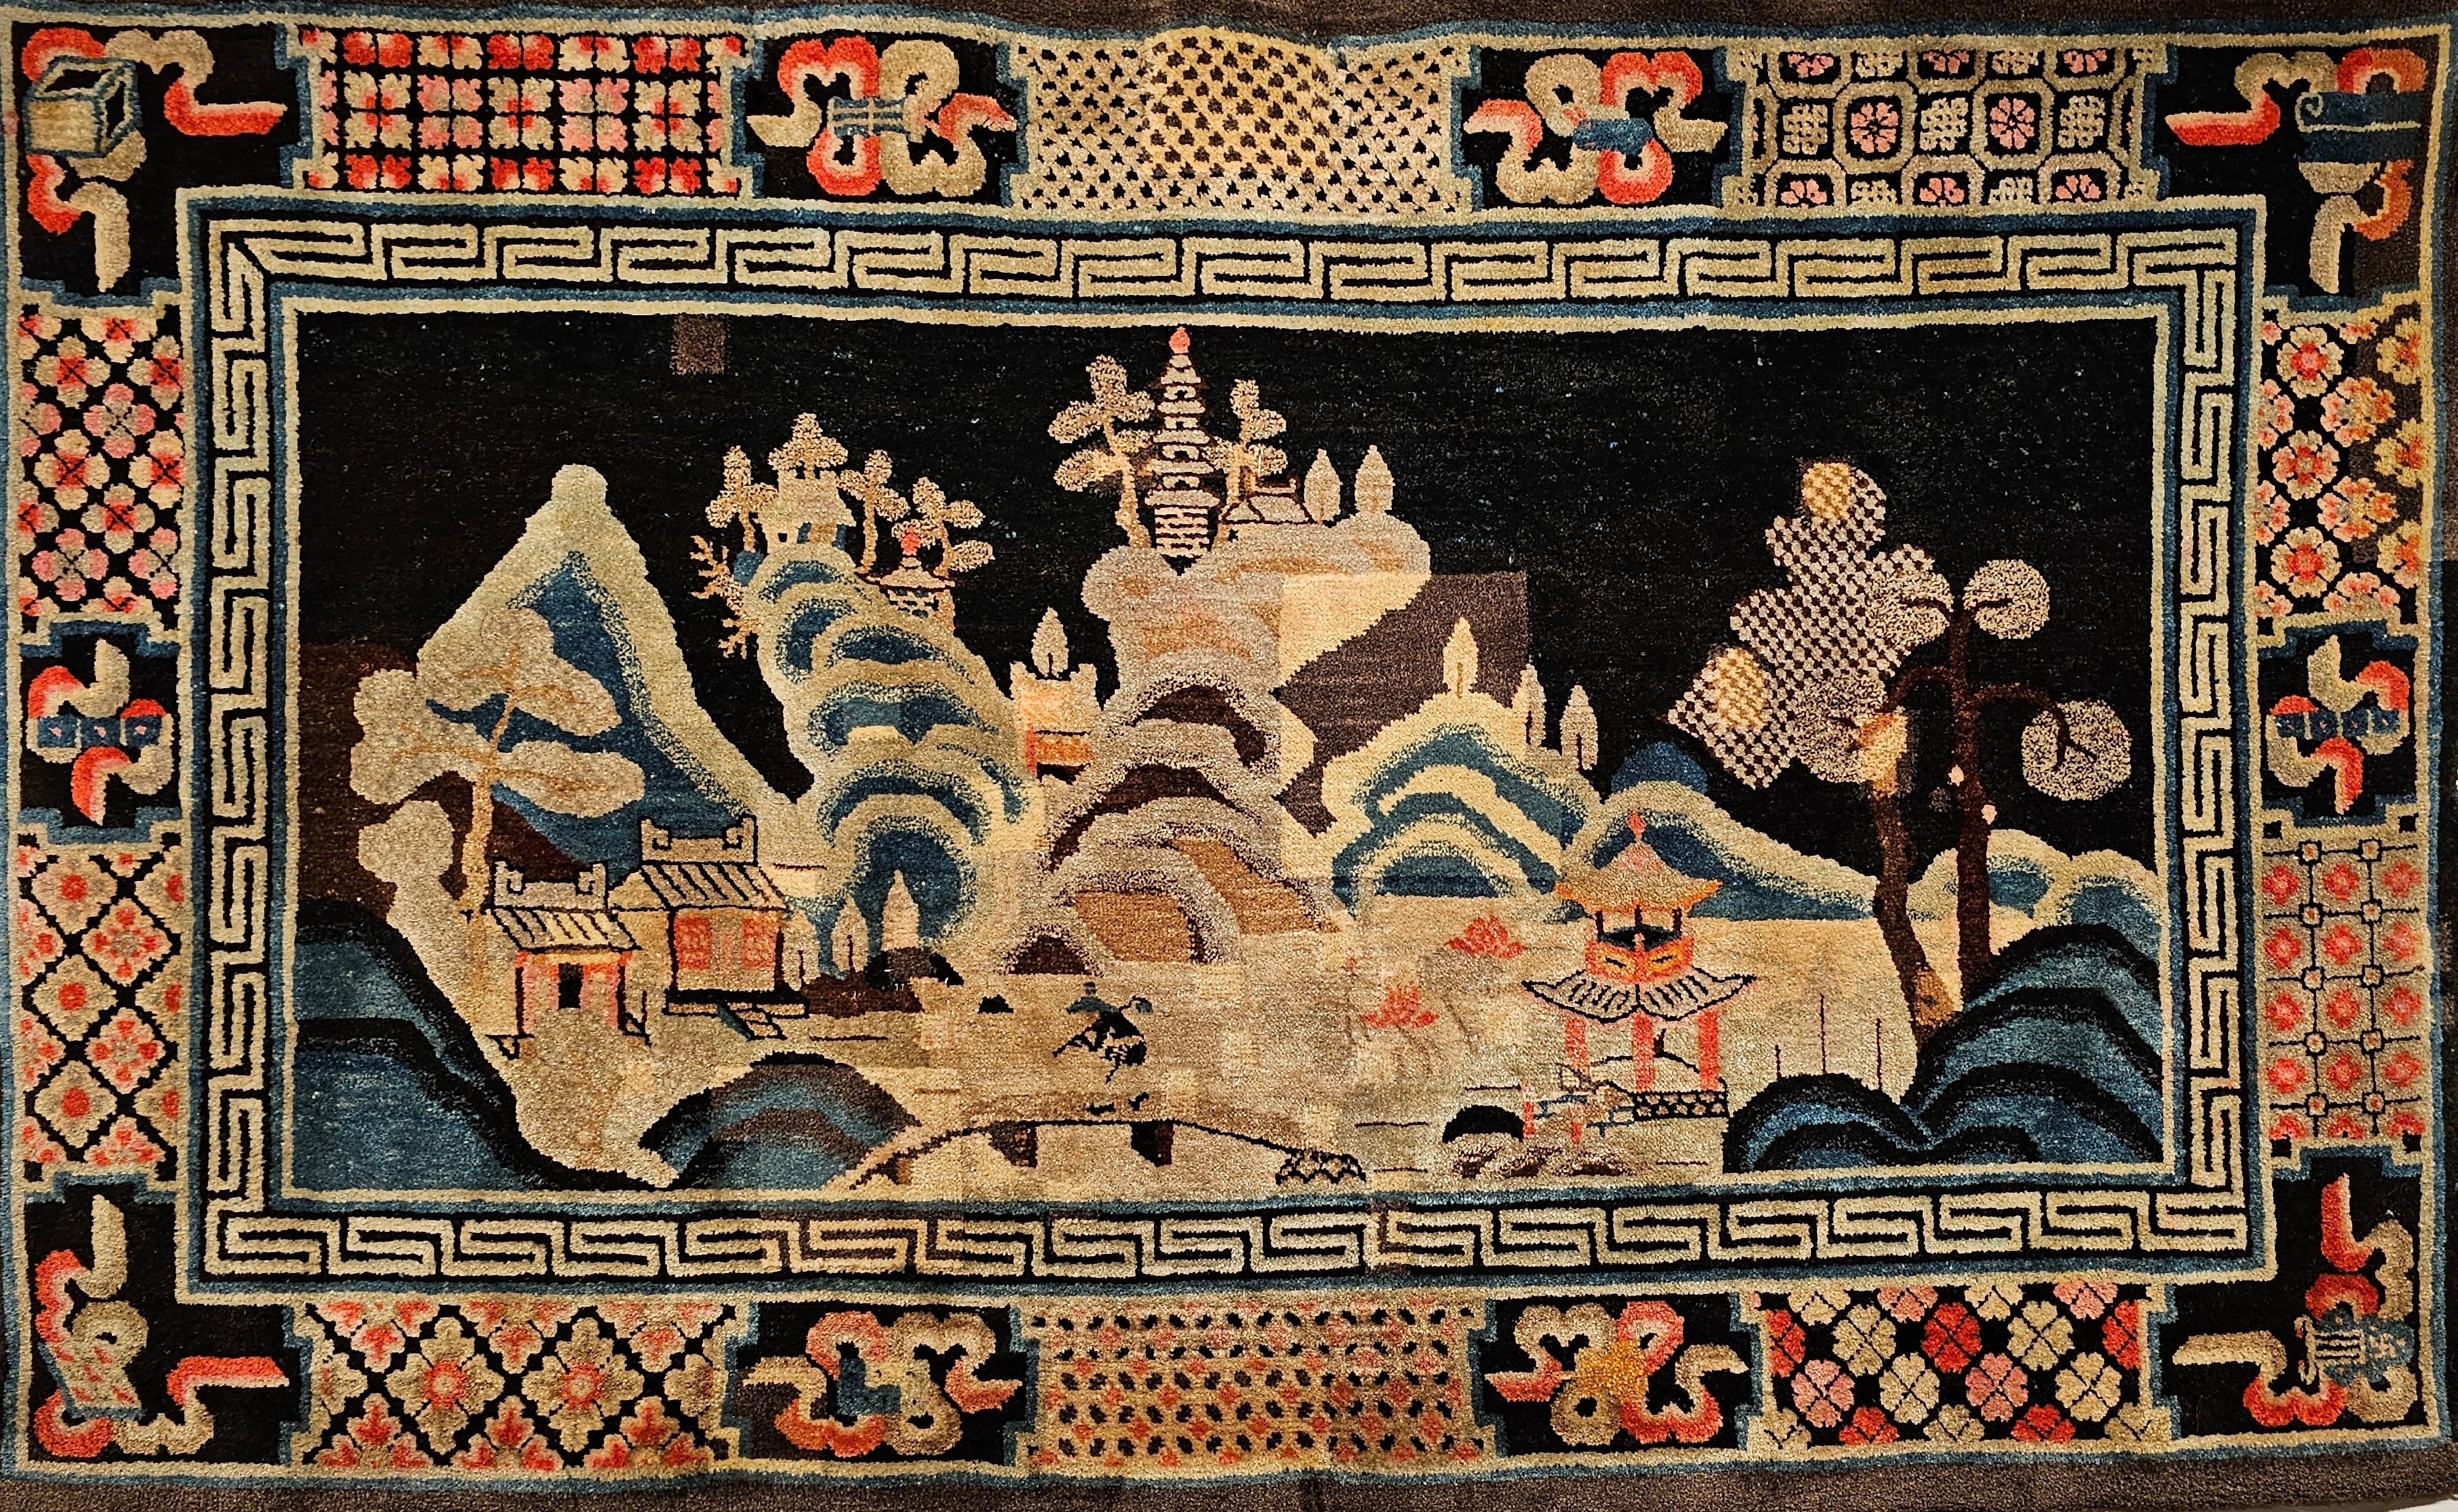 Magnifique Ningxia de la fin du 19e siècle  tapis de l'ouest de la Chine.  Ce tapis présente un dessin similaire aux tapis Khotan et Ningxia.  Le dessin représente la campagne avec des montagnes au loin, des pagodes au sommet et des rivières dans la